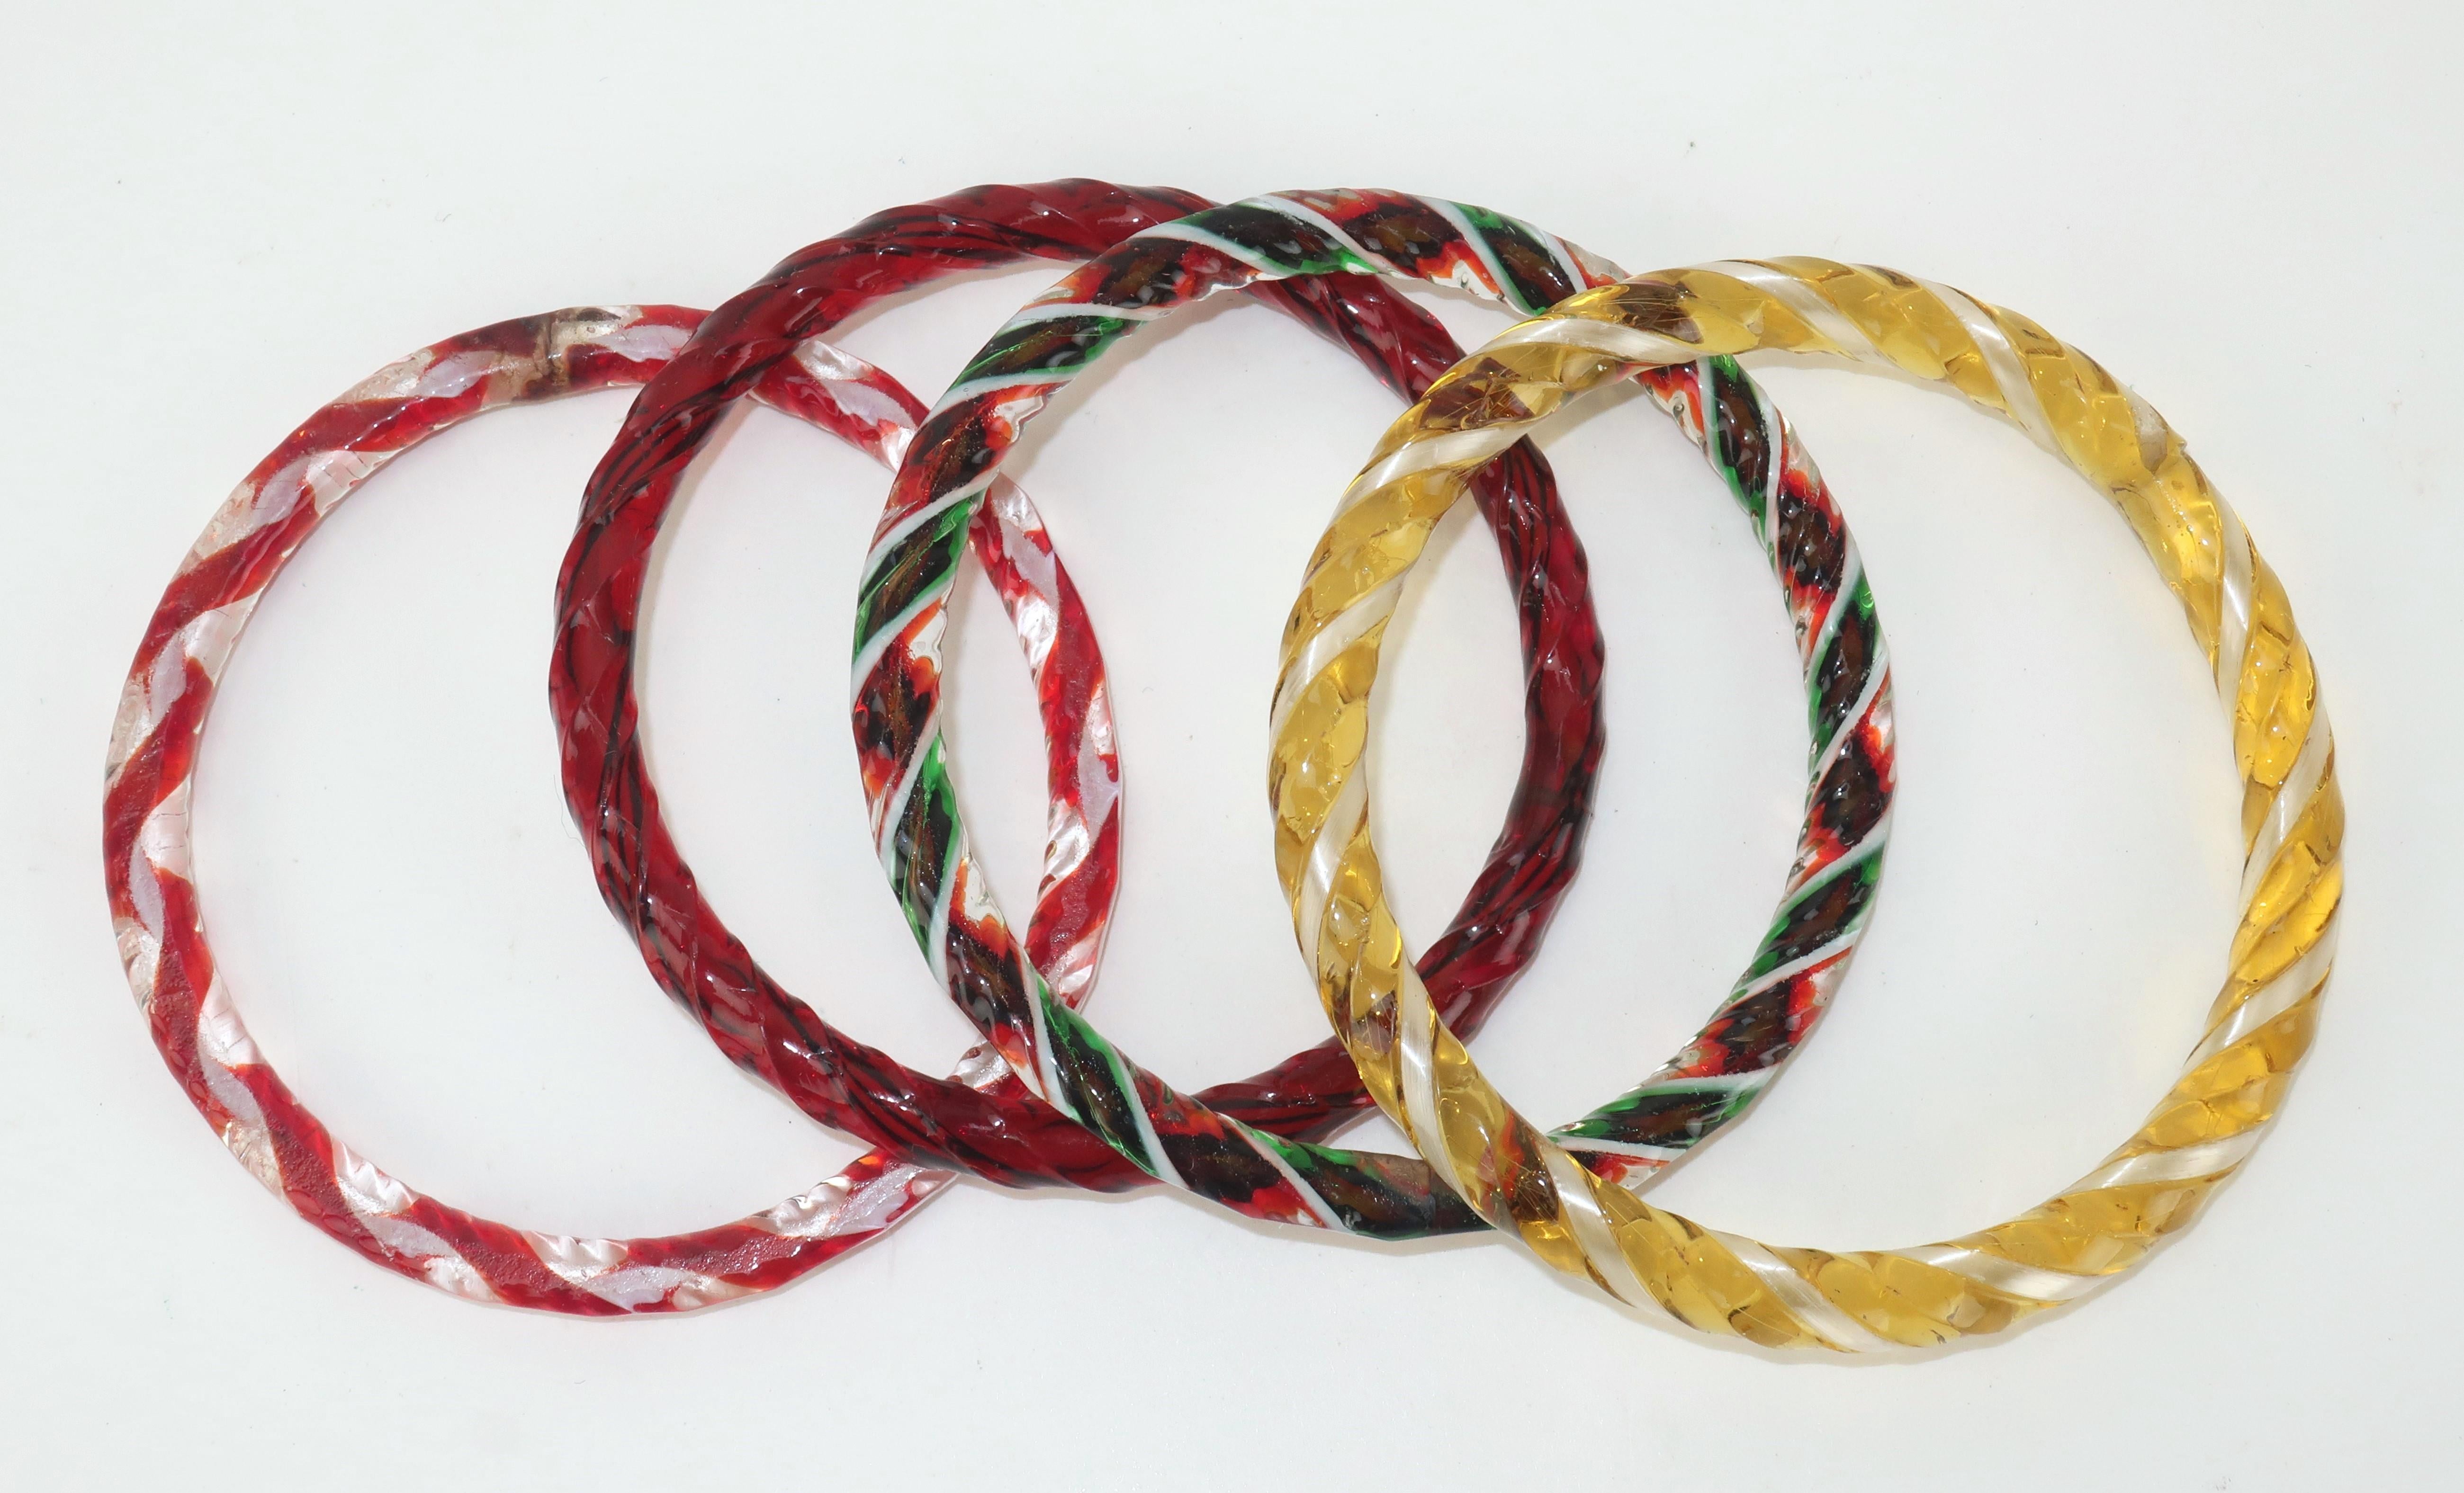 Lot de 4 bracelets en verre vintage de style Murano aux couleurs de la canne à sucre : rouge, jaune, vert et blanc.  Chaque bracelet présente une surface torsadée et un aspect translucide.  Ils créent un son charmant lorsqu'ils sont portés ensemble,